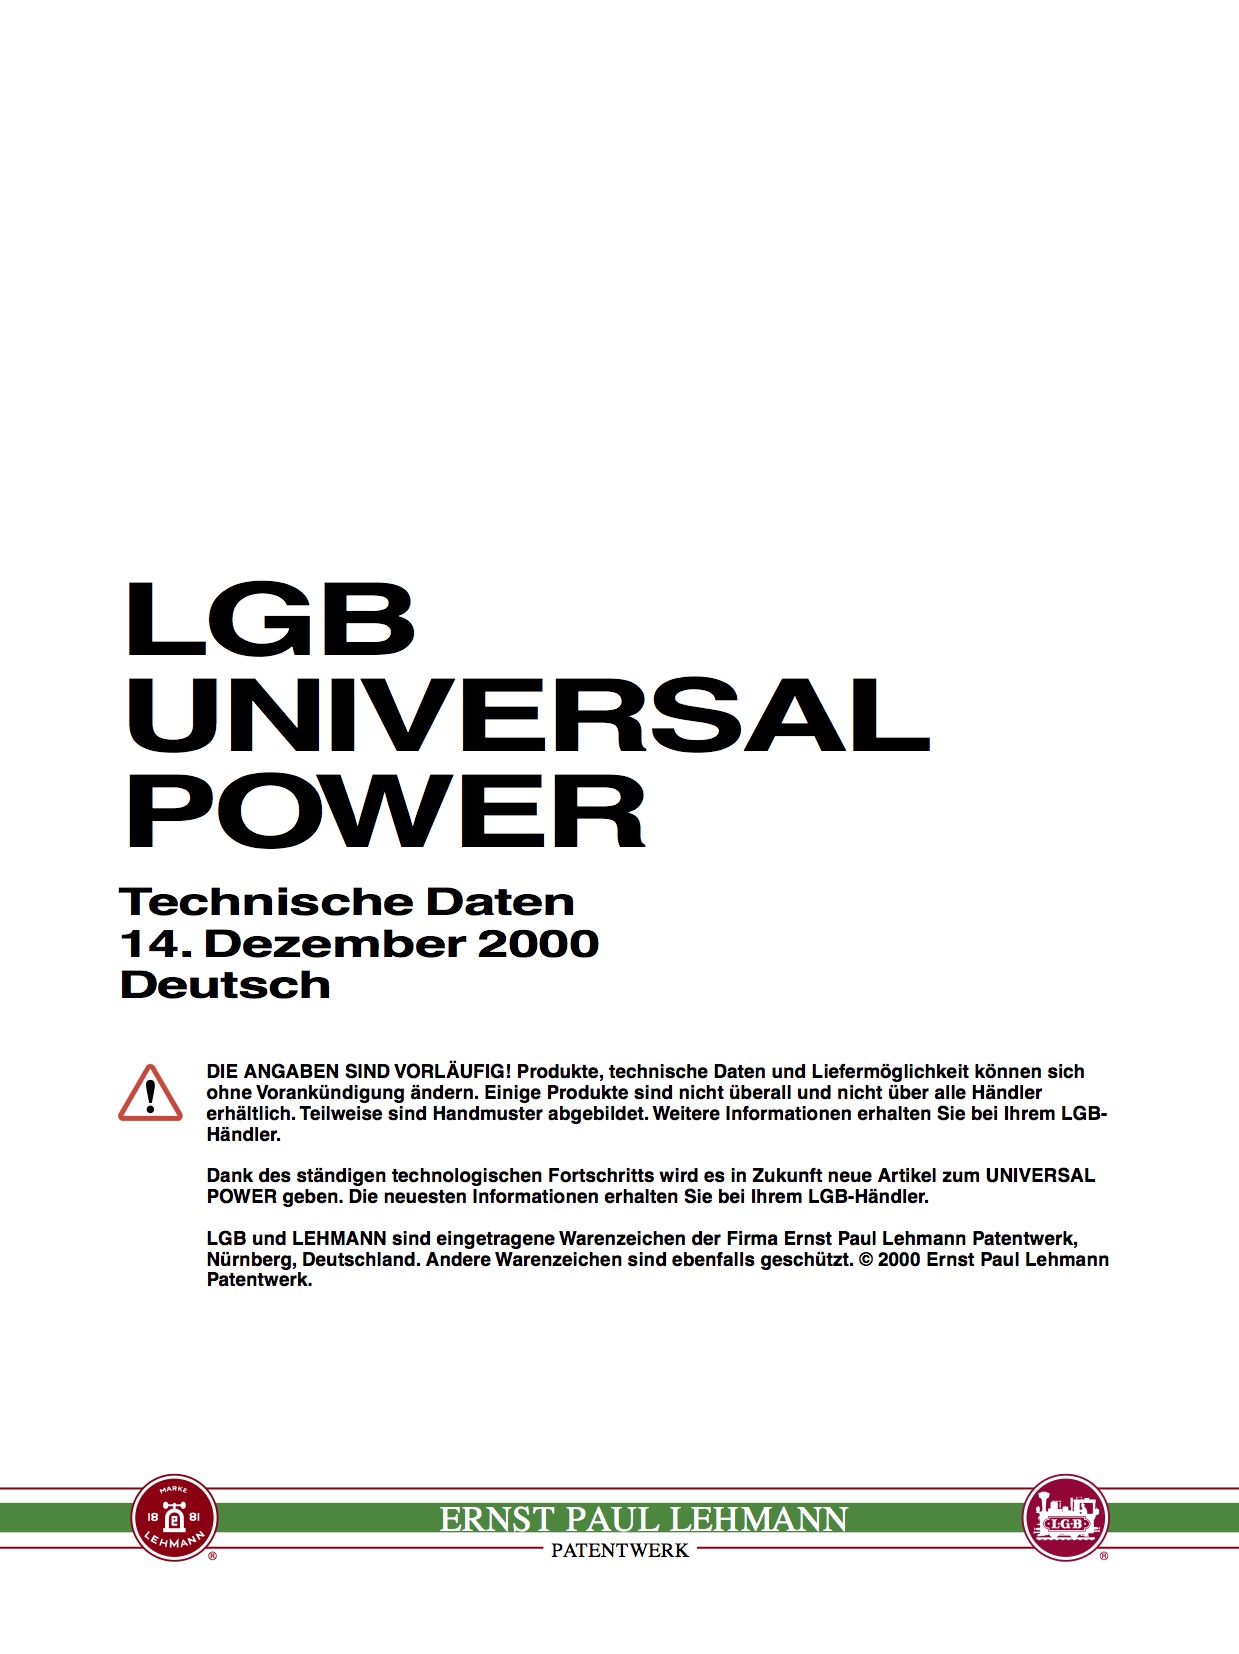 LGB White Paper 2000 - Universal Power, Deutsch